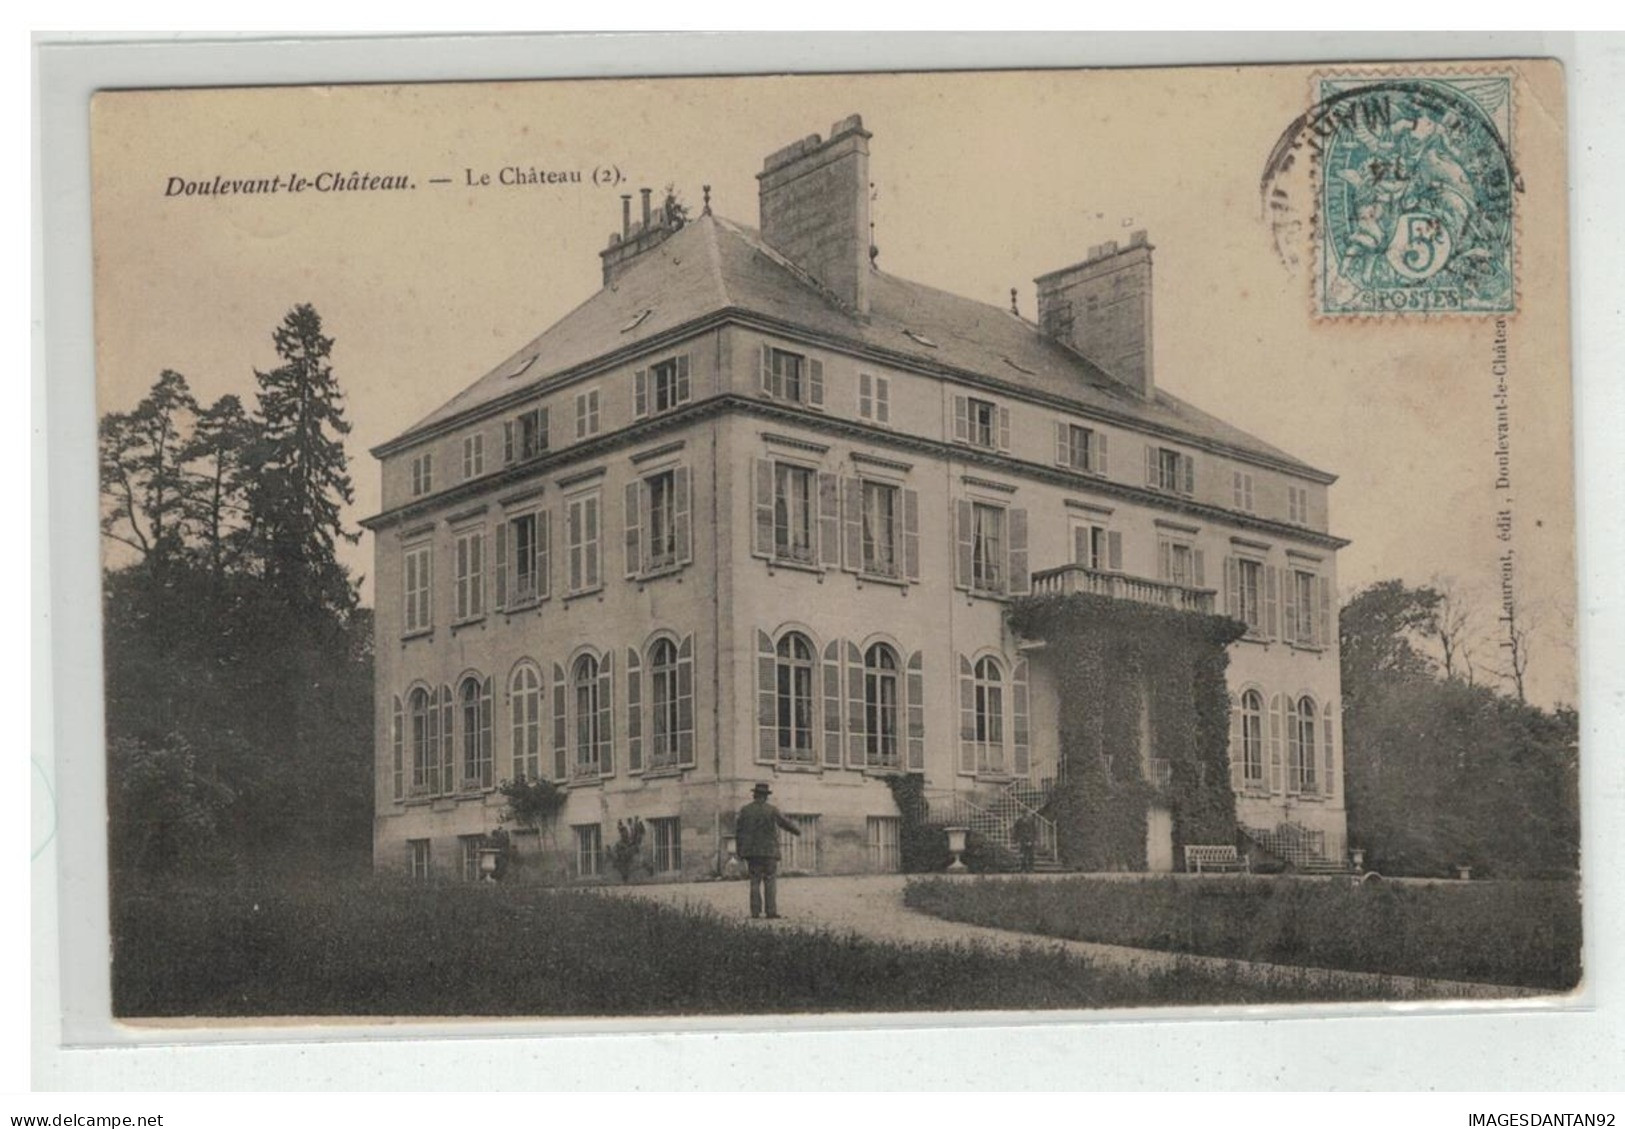 52 DOULEVANT LE CHATEAU CHATEAU VUE N°2 - Doulevant-le-Château